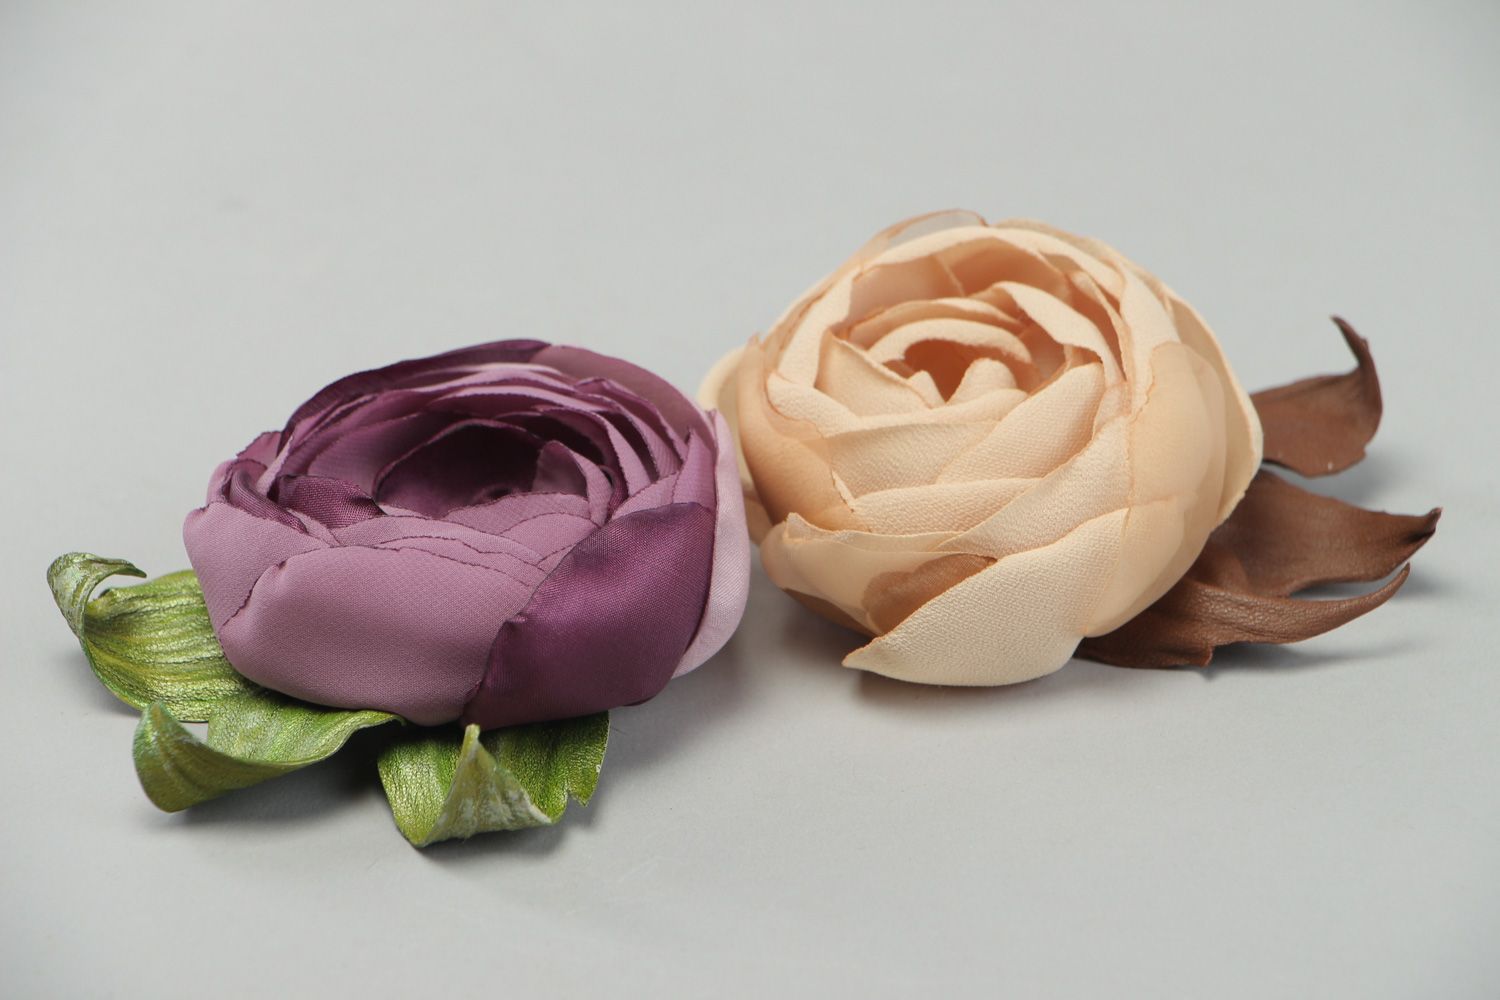 Шифоновые броши в виде цветов ручной работы с кожаными листьями женские кремовая и лиловая 2 штуки фото 2